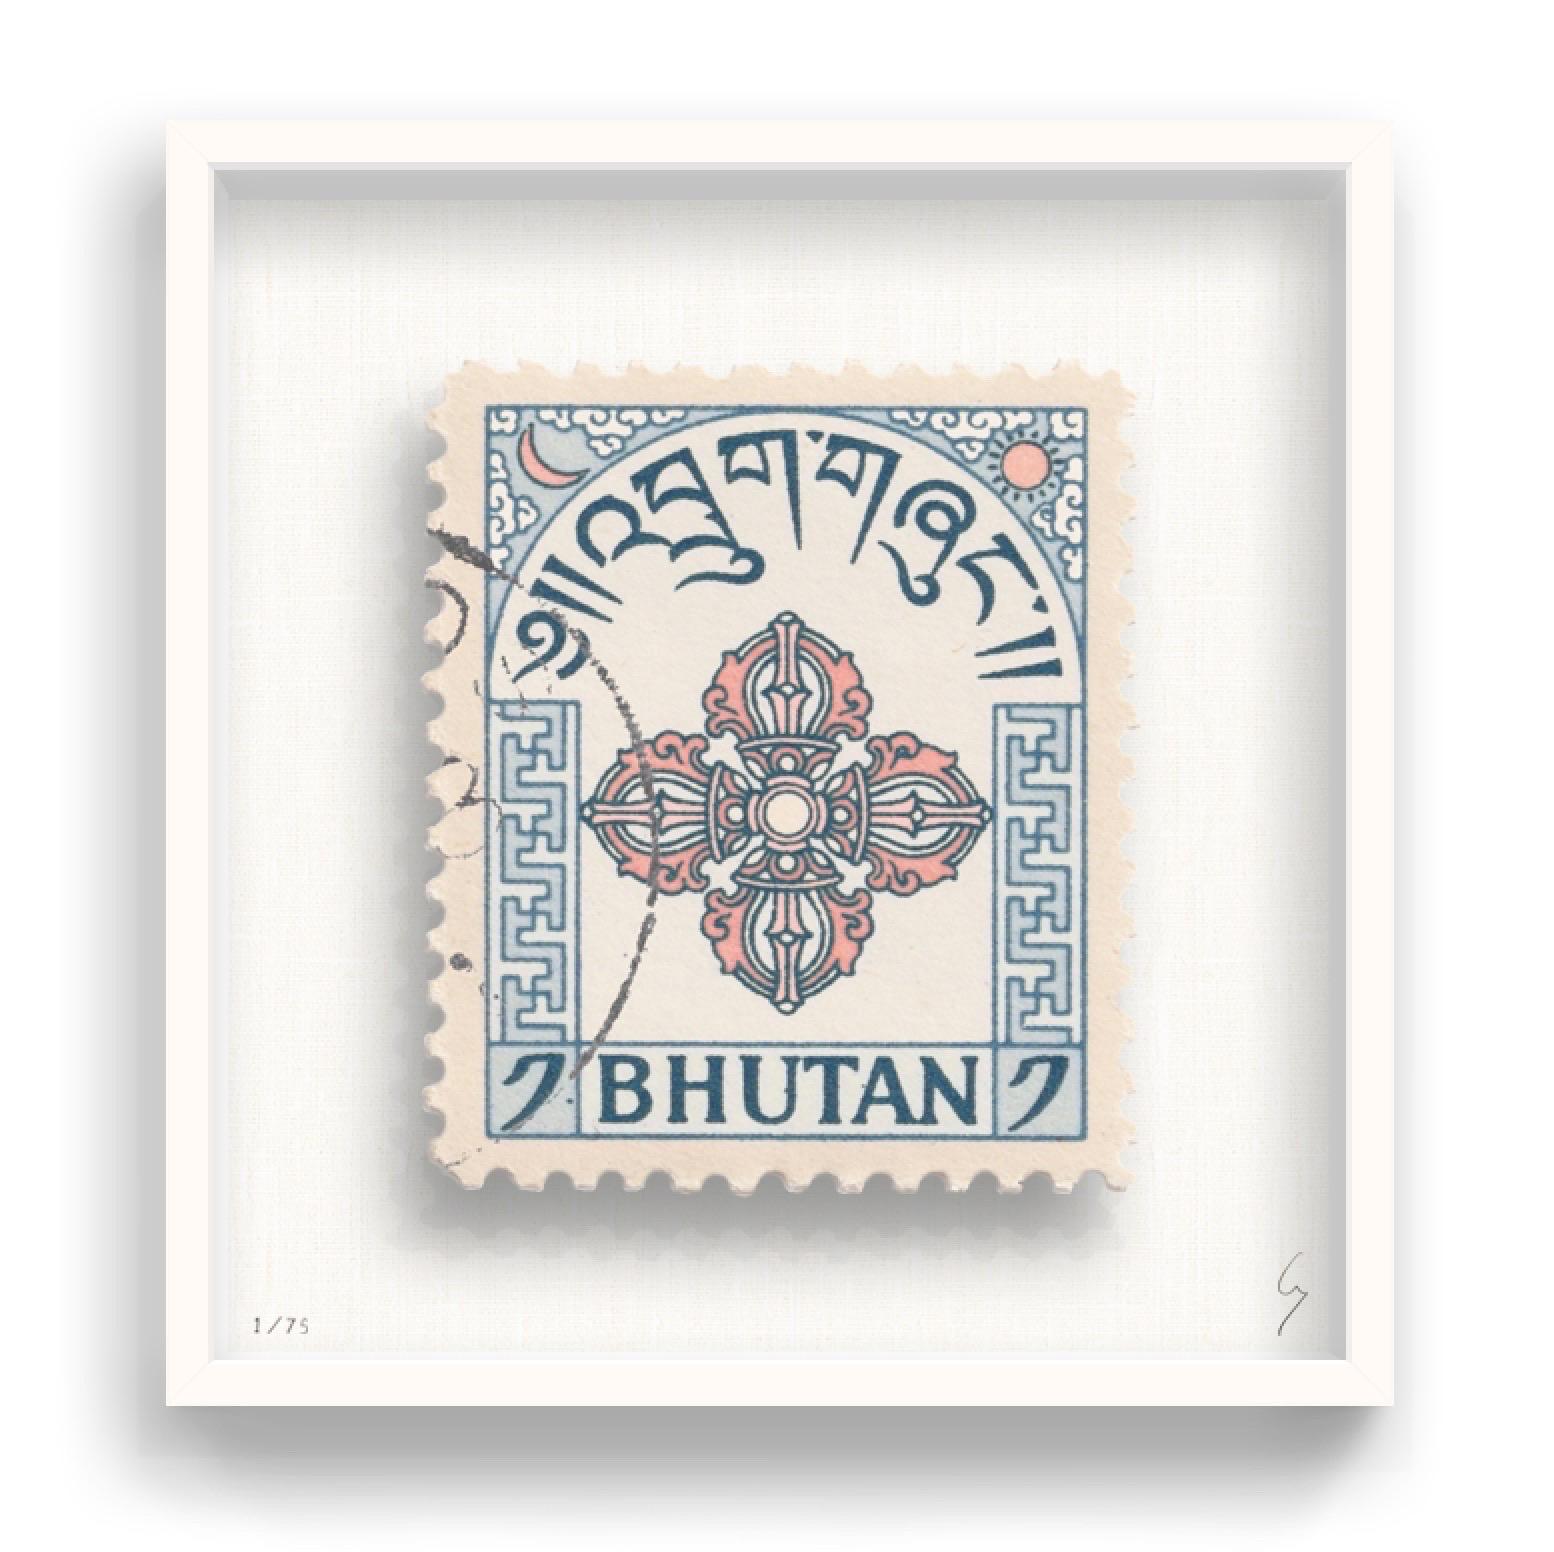 Guy Gee, Bhutan (mittel)

Handgravur auf 350gsm auf G.F Smith Karton
53 x 56cm (20 4/5 x 22 2/5 in)
Inklusive Rahmen 
Auflage von 75 

Jedes Kunstwerk von Guy wurde auf der Grundlage einer Originalbriefmarke digital nachgebildet. Das von Hand